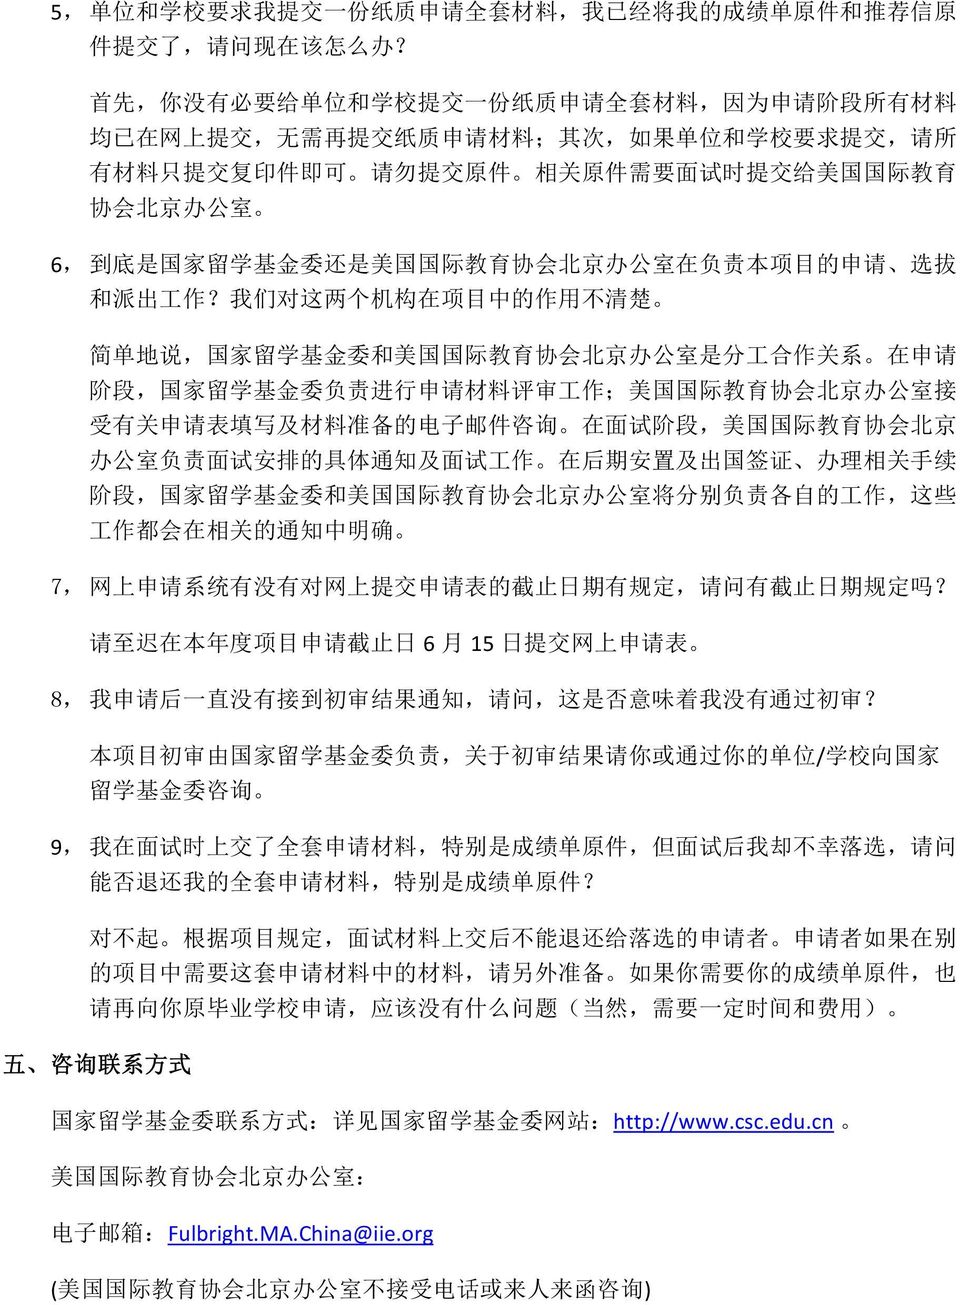 给 美 国 国 际 教 育 协 会 北 京 办 公 室 6, 到 底 是 国 家 留 学 基 金 委 还 是 美 国 国 际 教 育 协 会 北 京 办 公 室 在 负 责 本 项 目 的 申 请 选 拔 和 派 出 工 作?